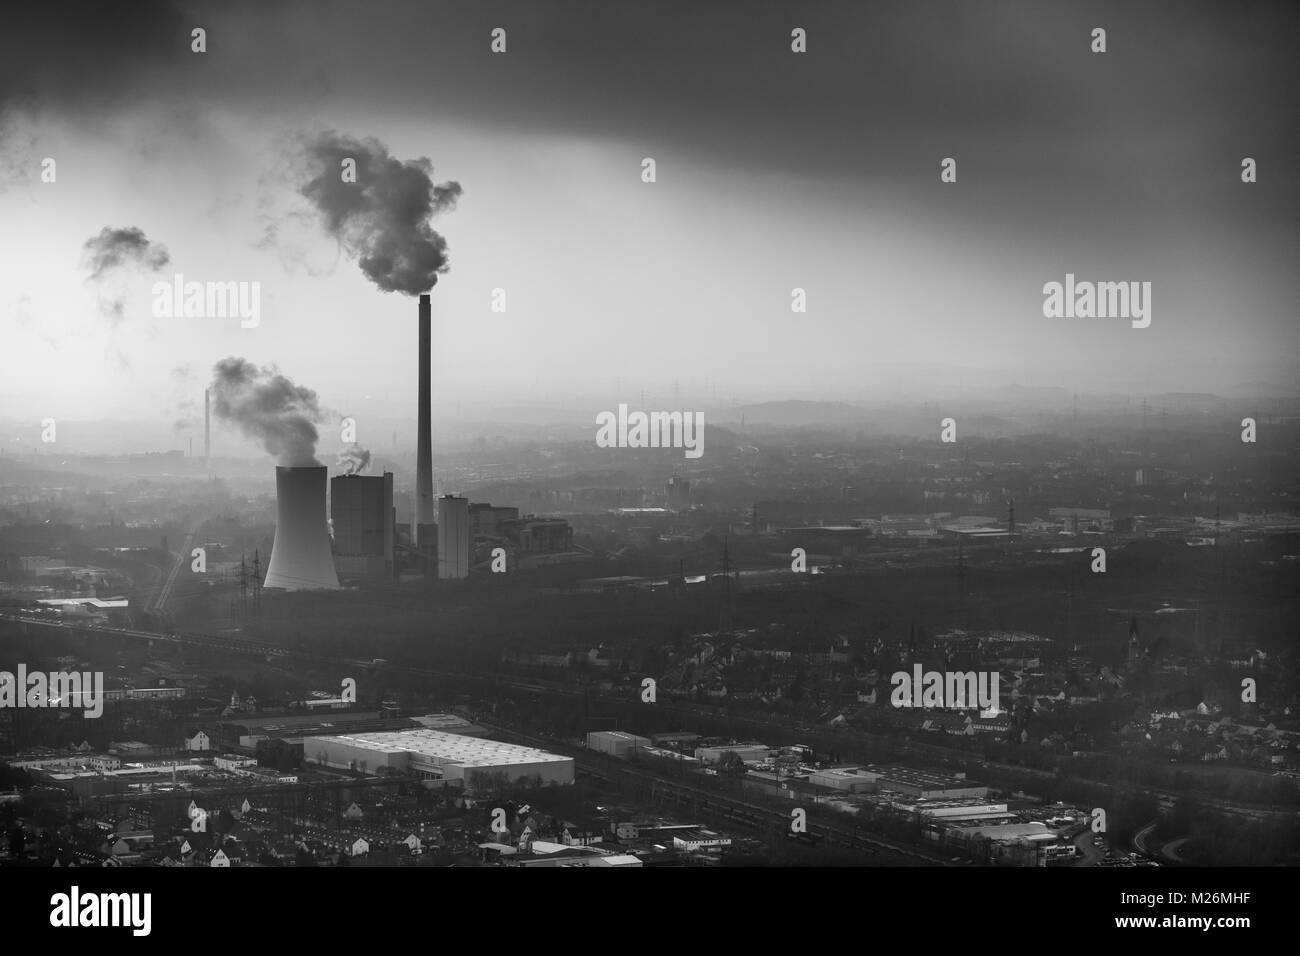 STEAG chauffage power plant Herne dans la brume avant toile industrielle à Herne dans la région de la Ruhr en Rhénanie du Nord-Westphalie. Puissance classiques au charbon pl Banque D'Images